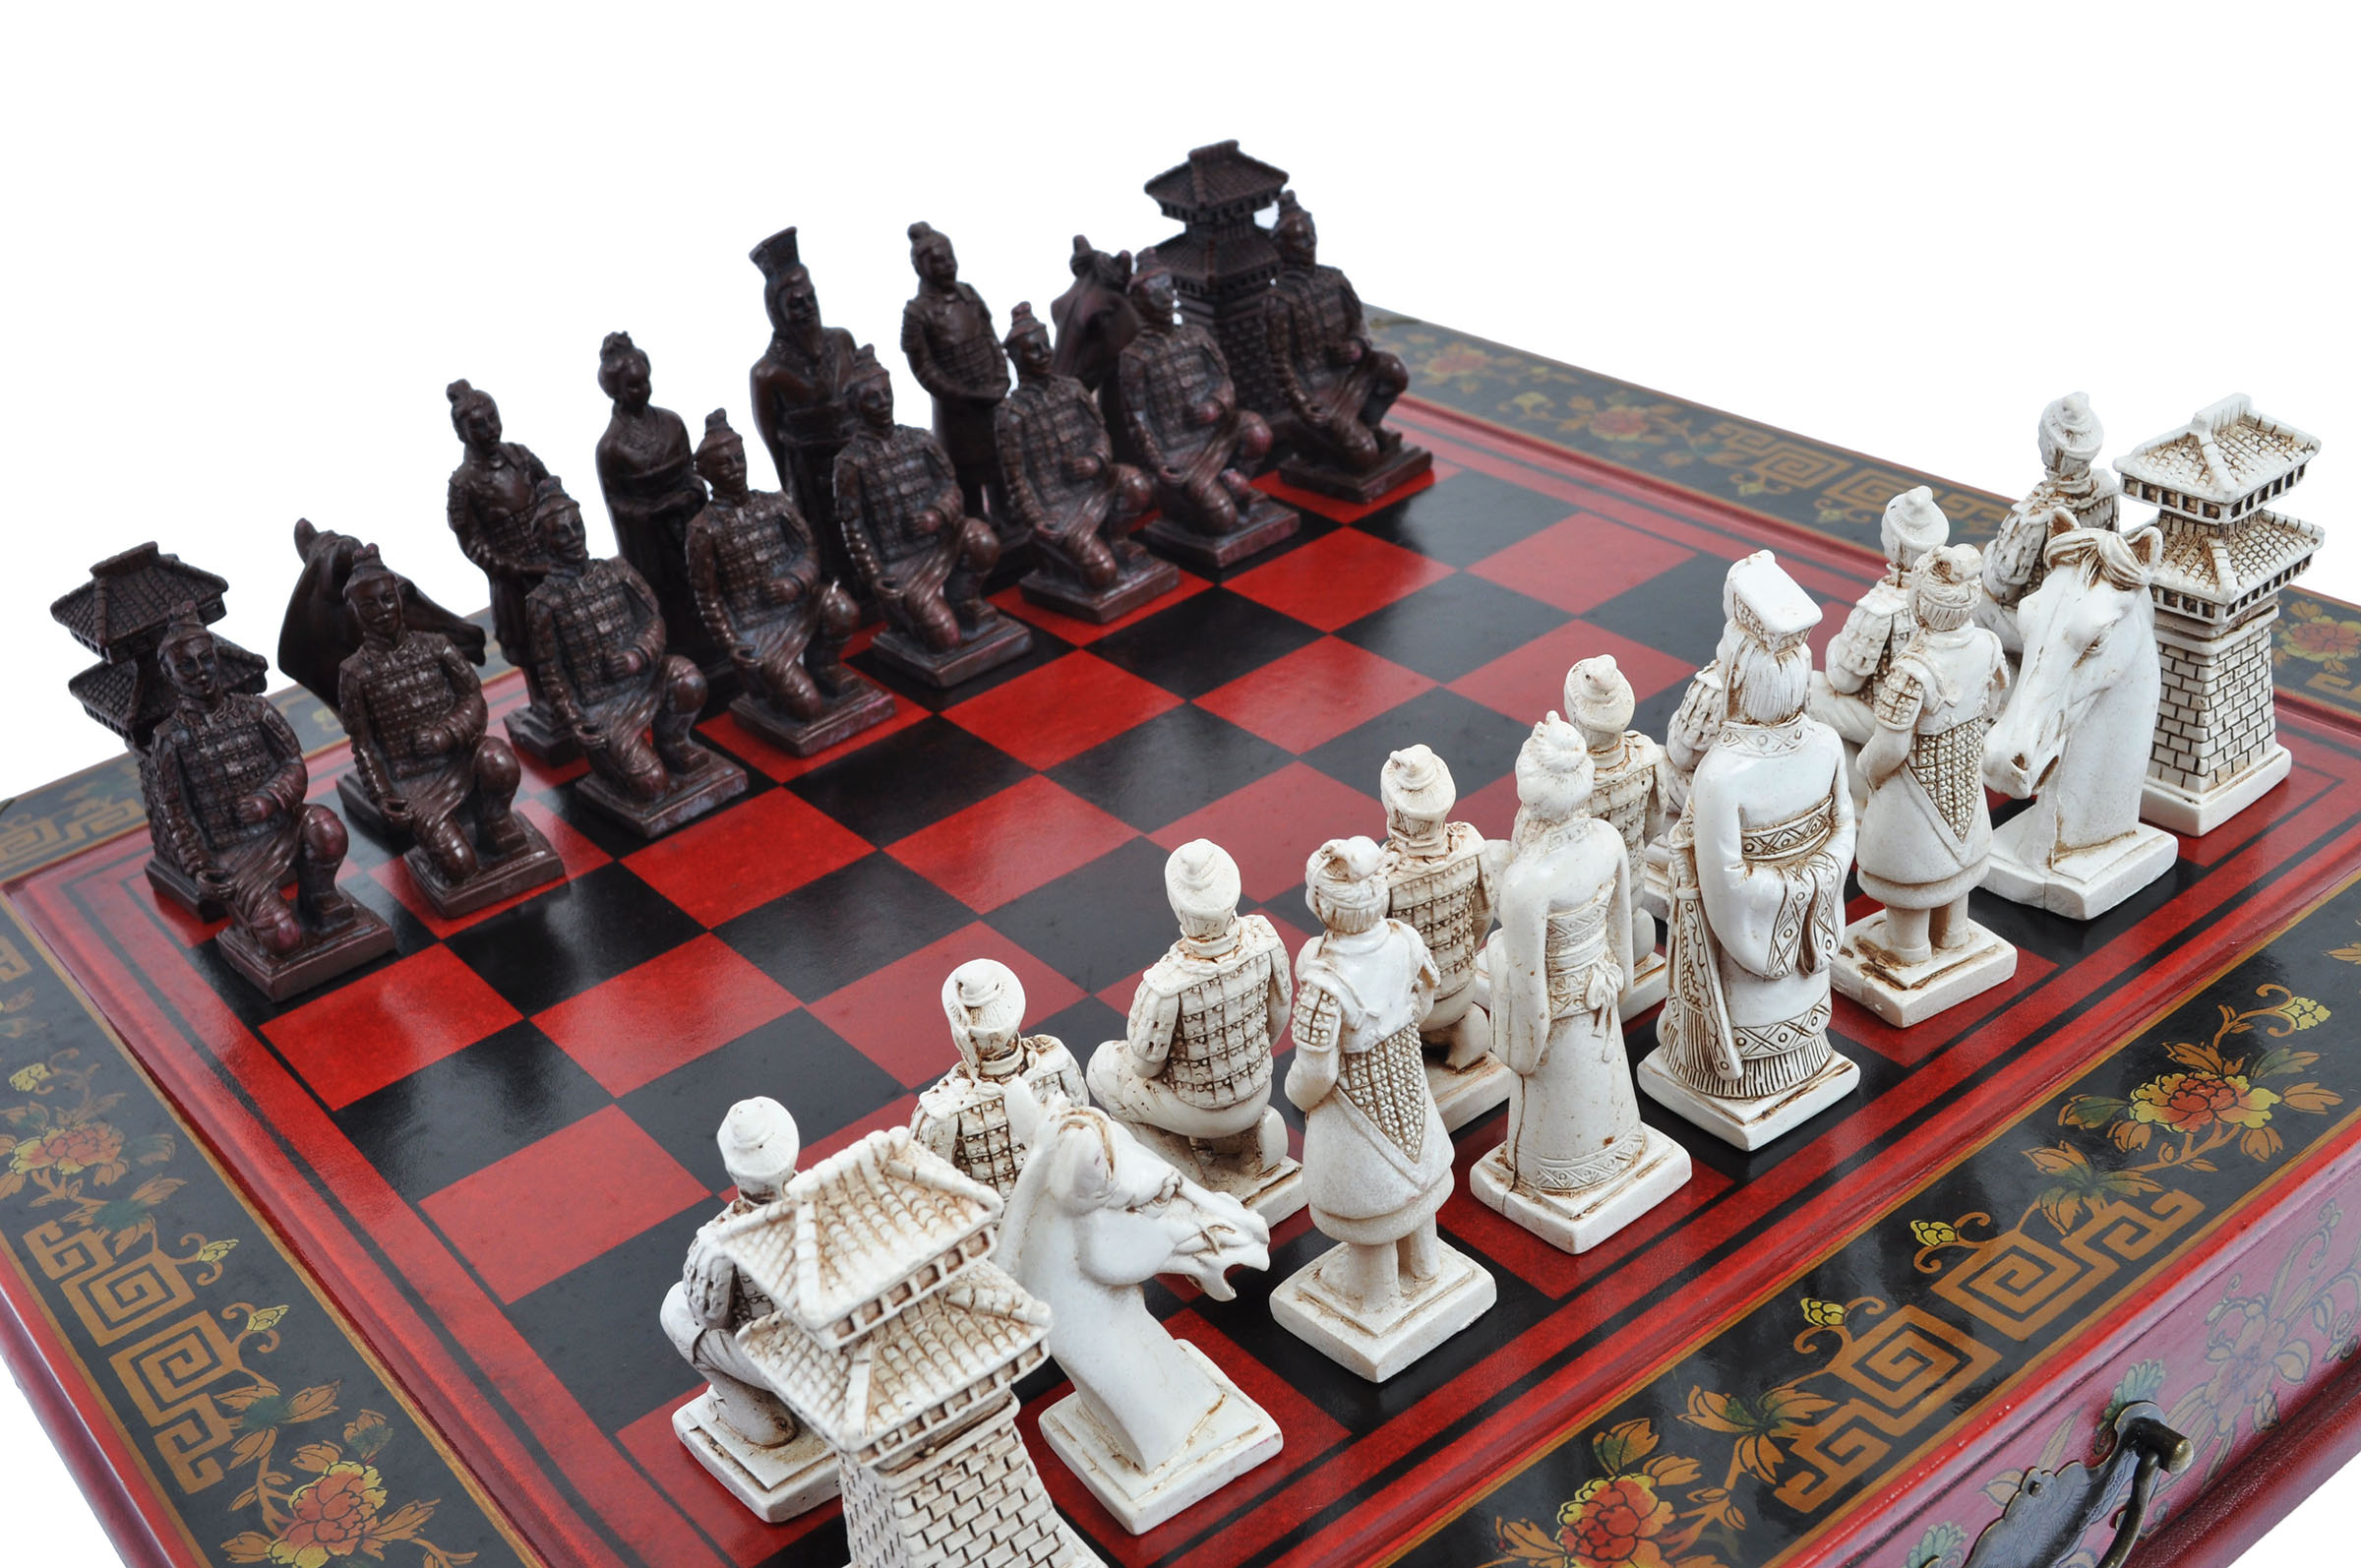 Le jeu d'échec chinois traditionnel : c'est quoi ? - Le Palais Des Echecs